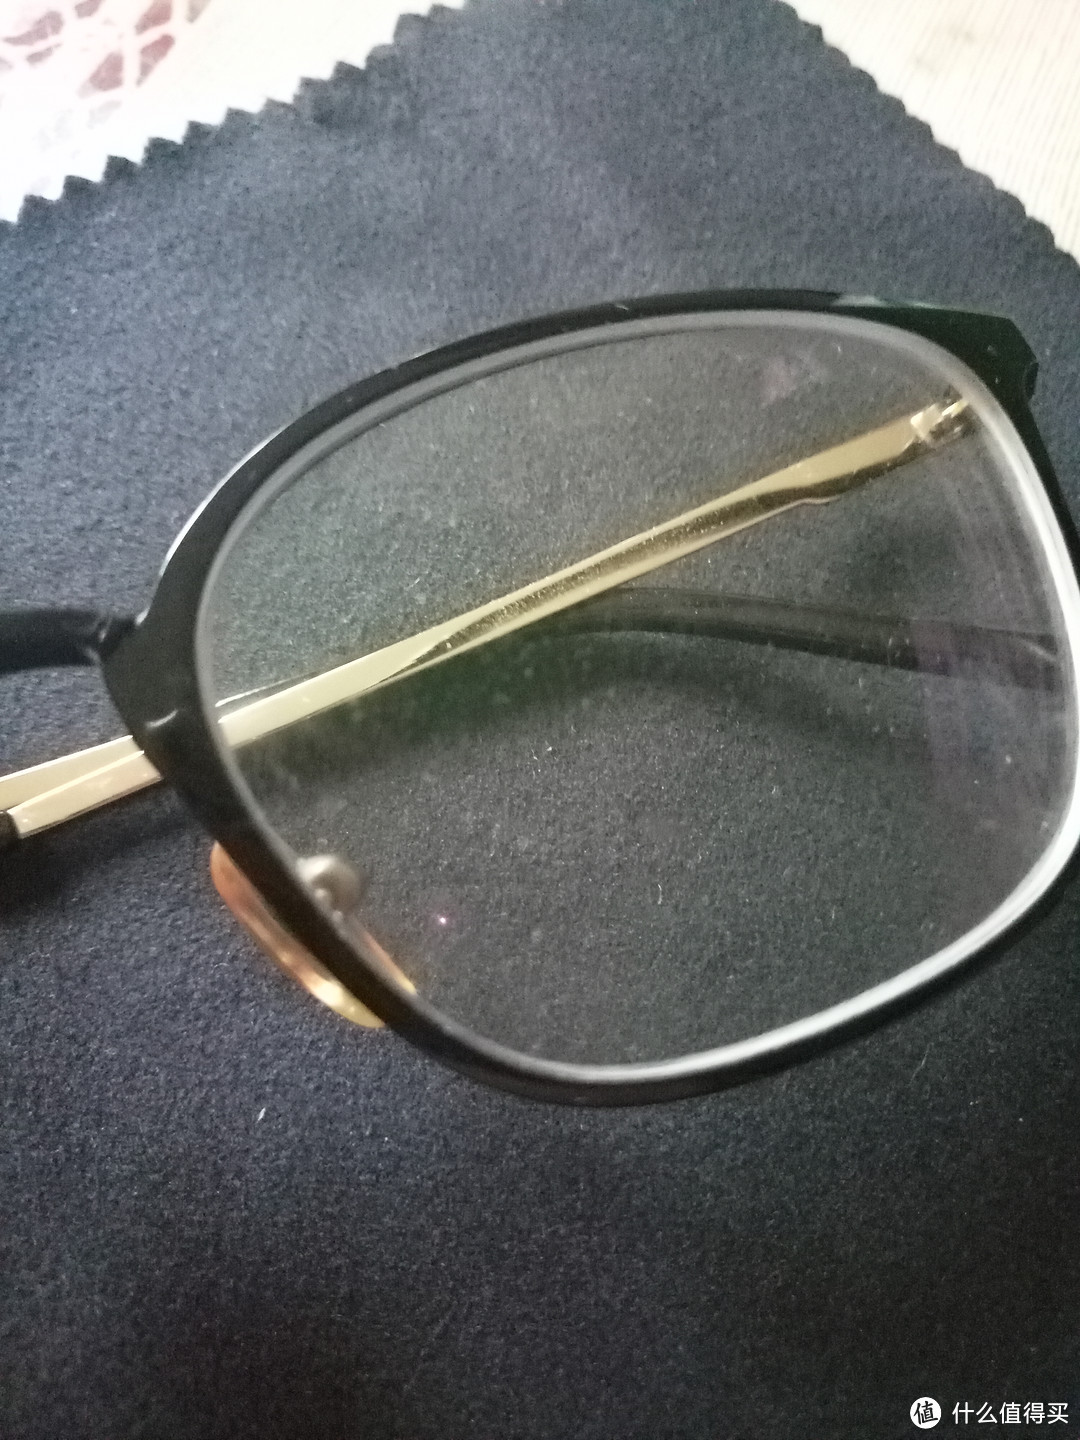 德国进口bestview眼镜清洁湿巾 评测